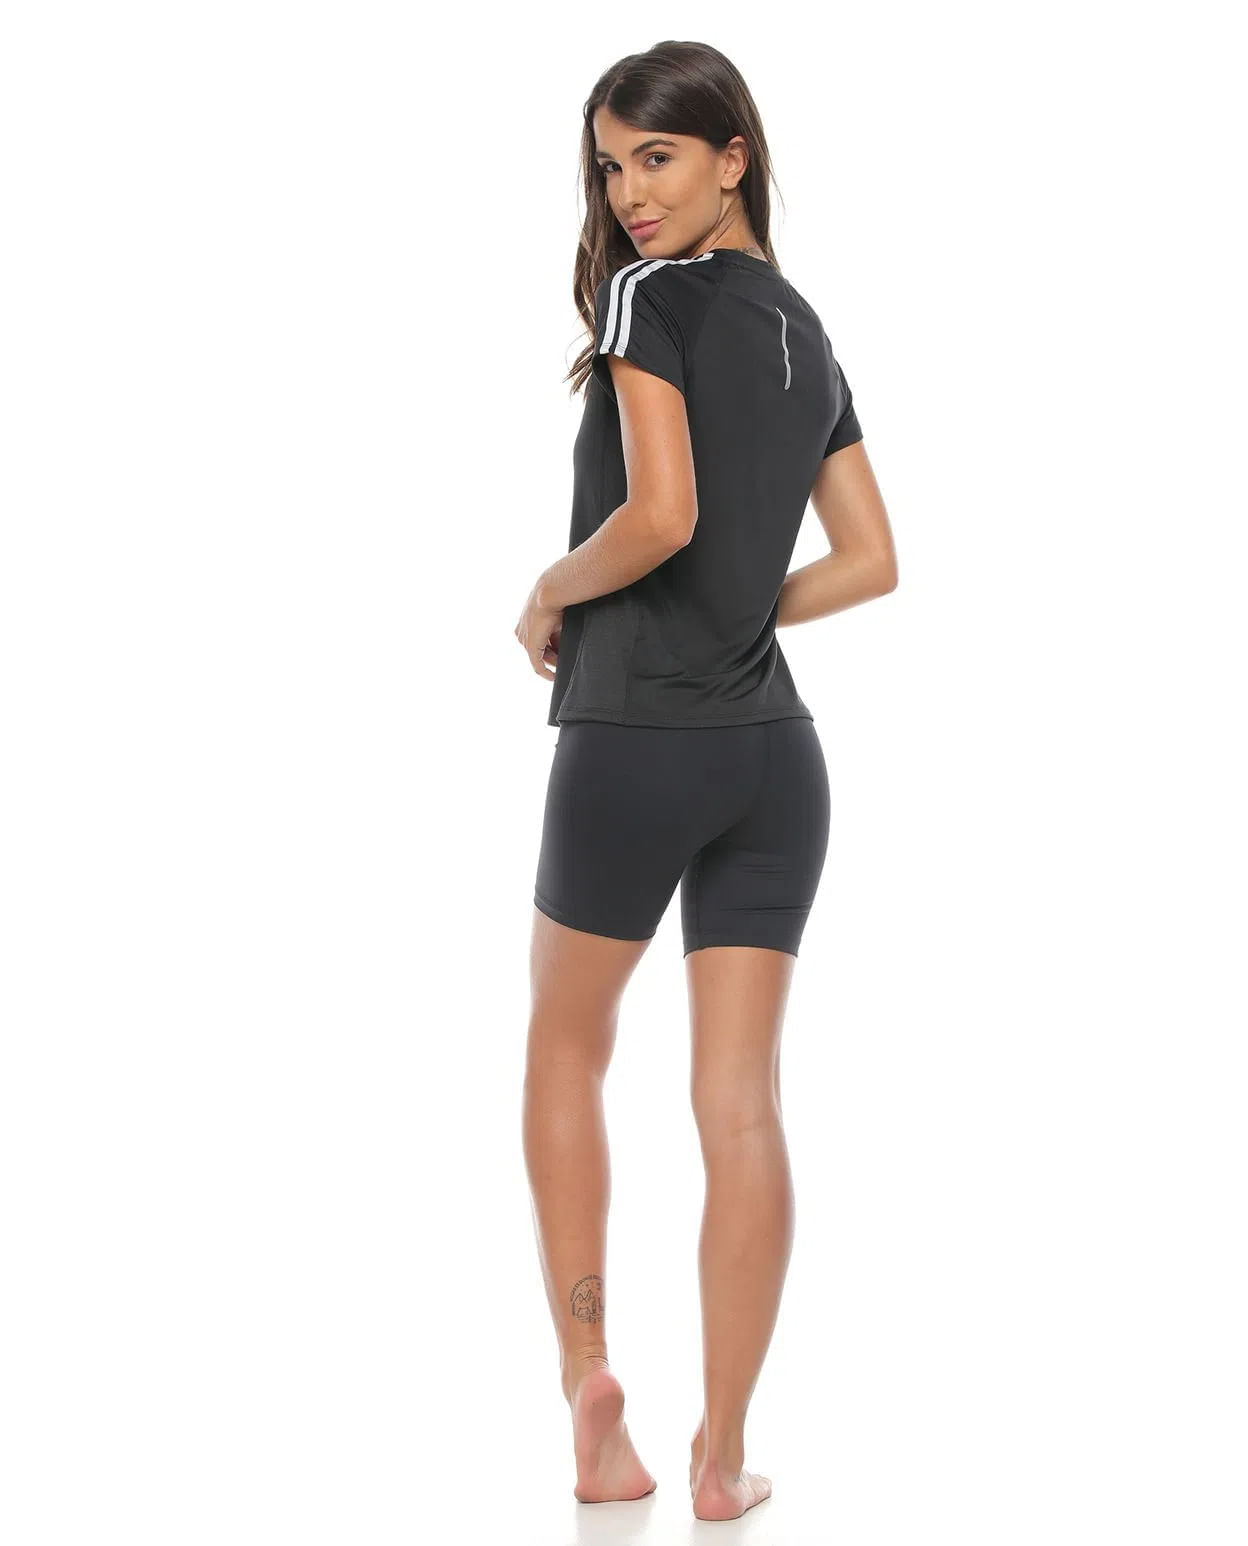 modelo con Short Deportivo Negro y camiseta deportiva Para Mujer parte trasera